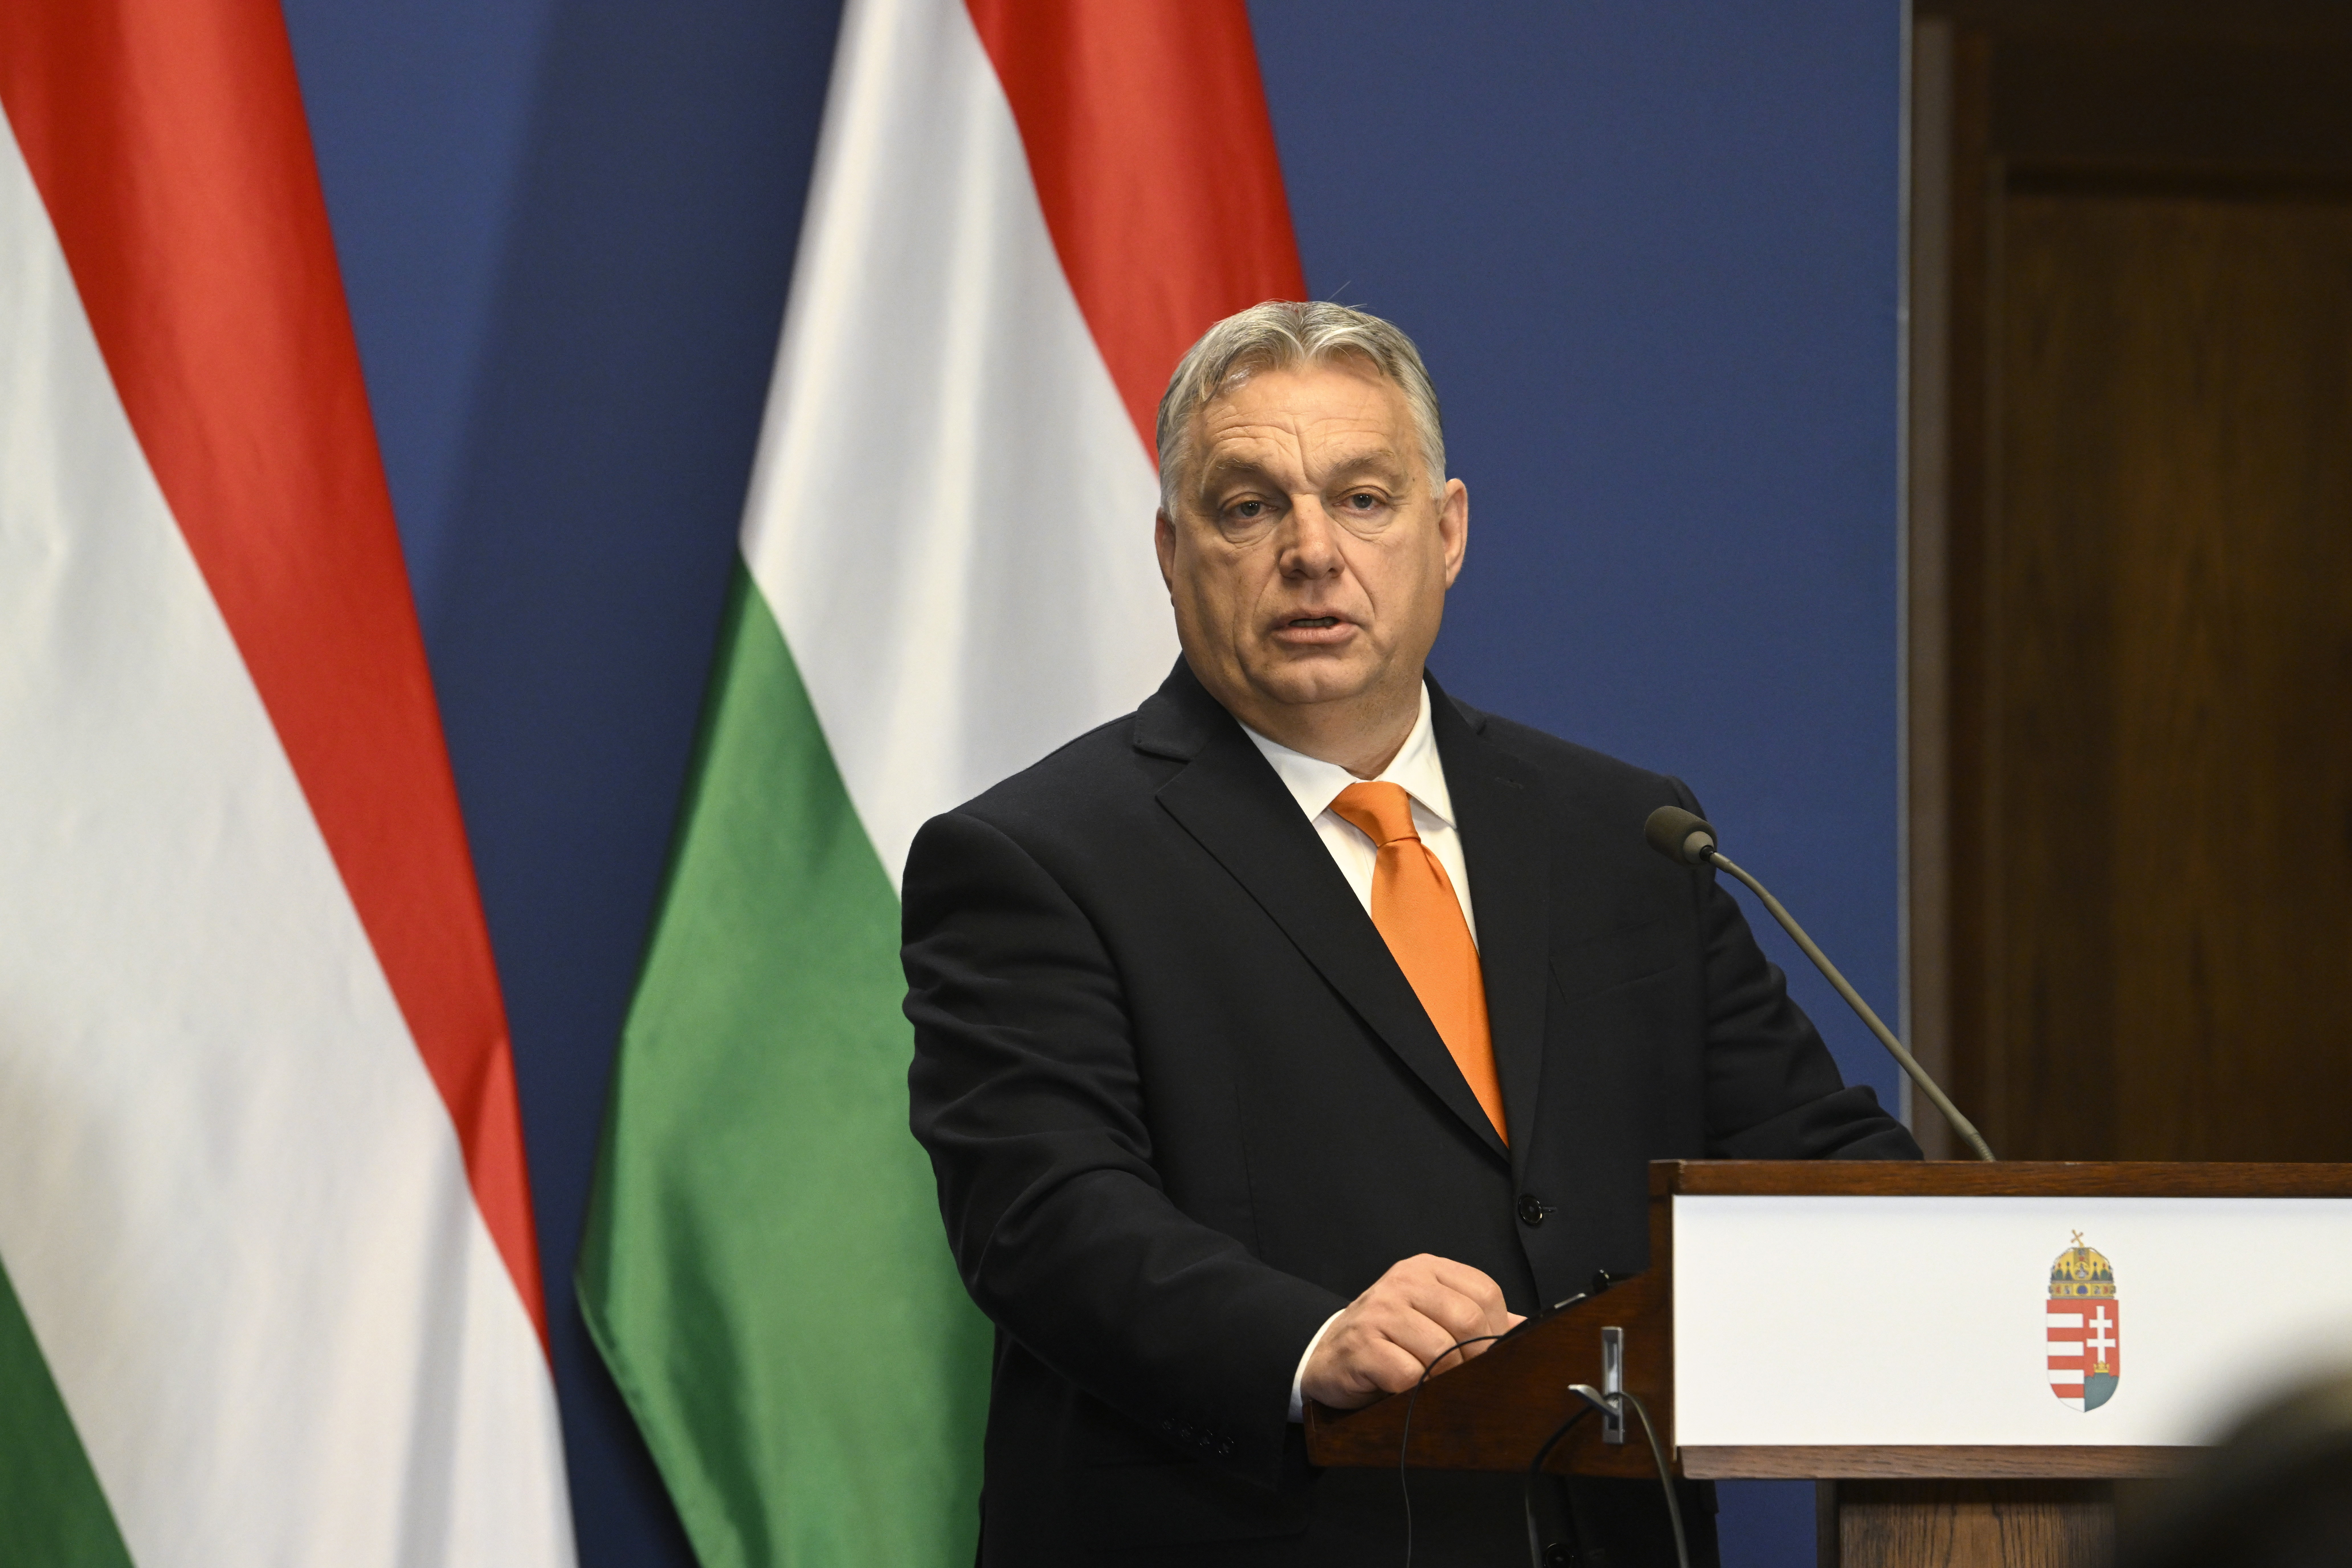 Bekeményít az EU az Orbán-kormánnyal szemben: "Teljesen elfogadhatatlan a szolidaritás ilyen fokú hiányának kimutatása egy EU-tagállam felé"